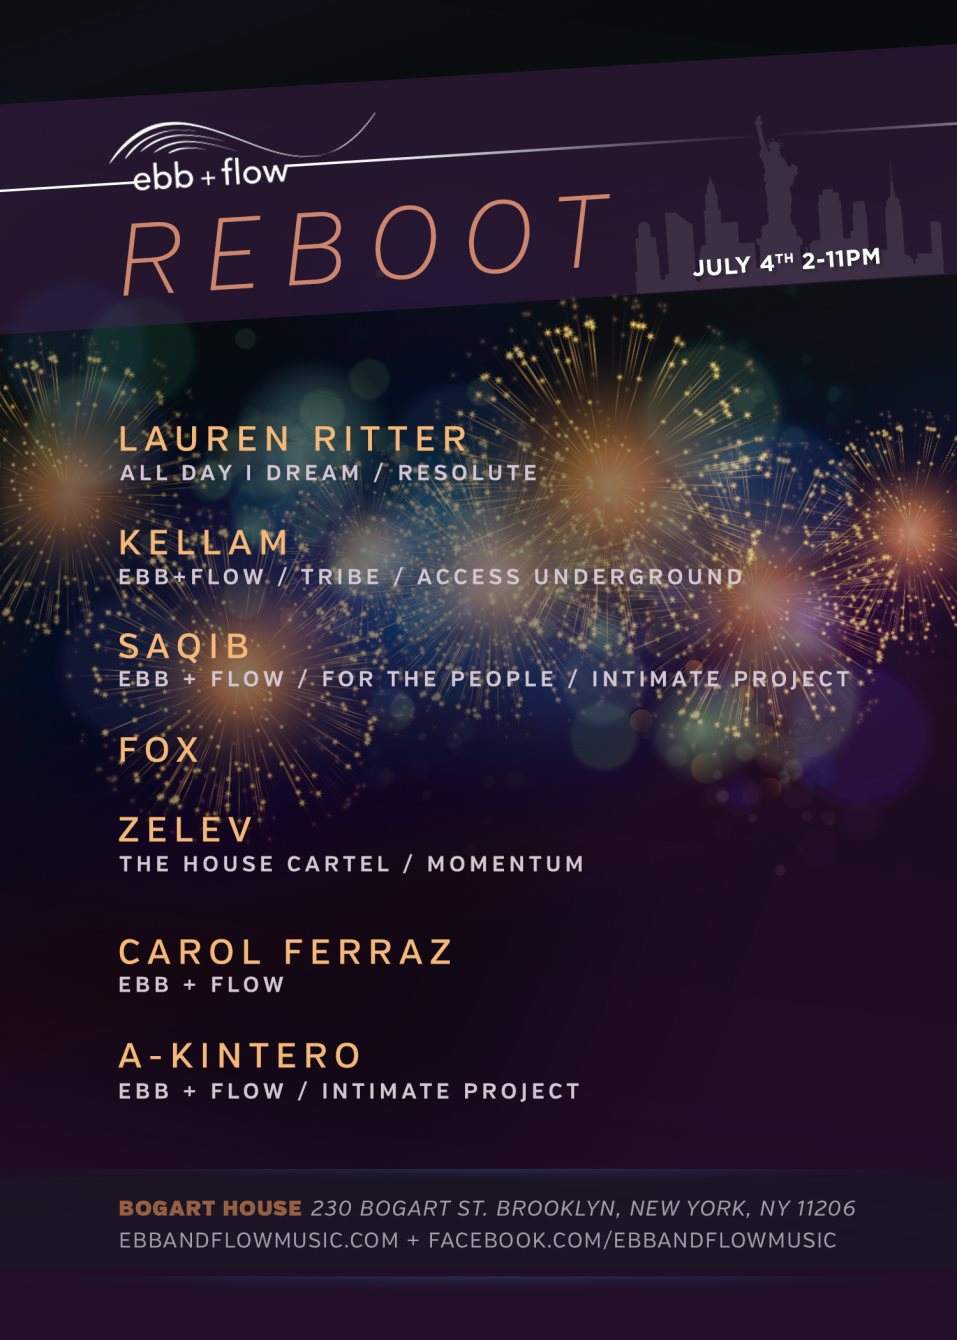 ebb + flow Reboot: Rooftop BBQ with Lauren Ritter, Kellam & More - フライヤー裏